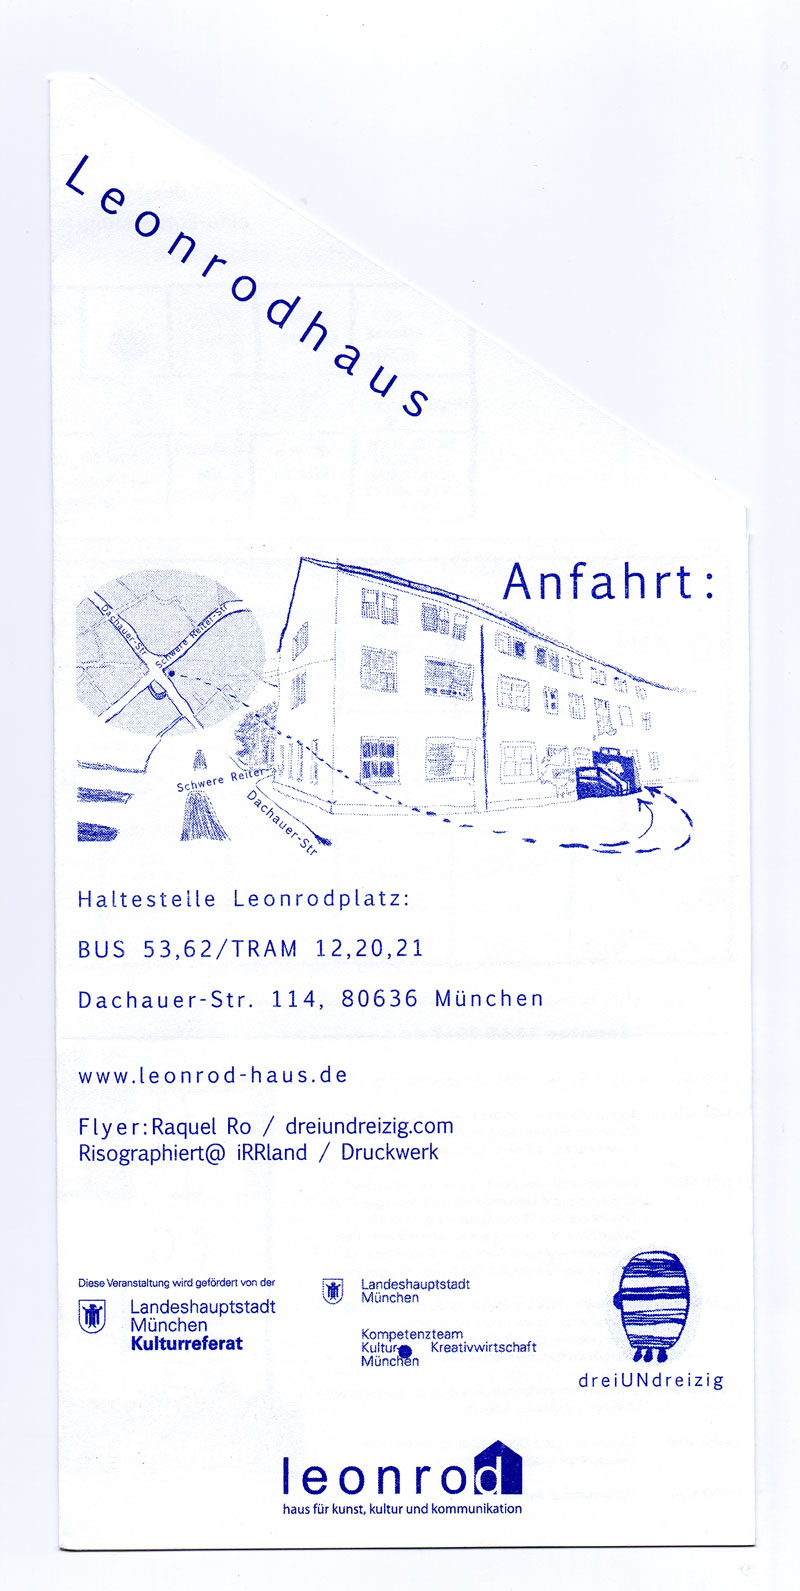 so-ein-gethese-2016-flyer